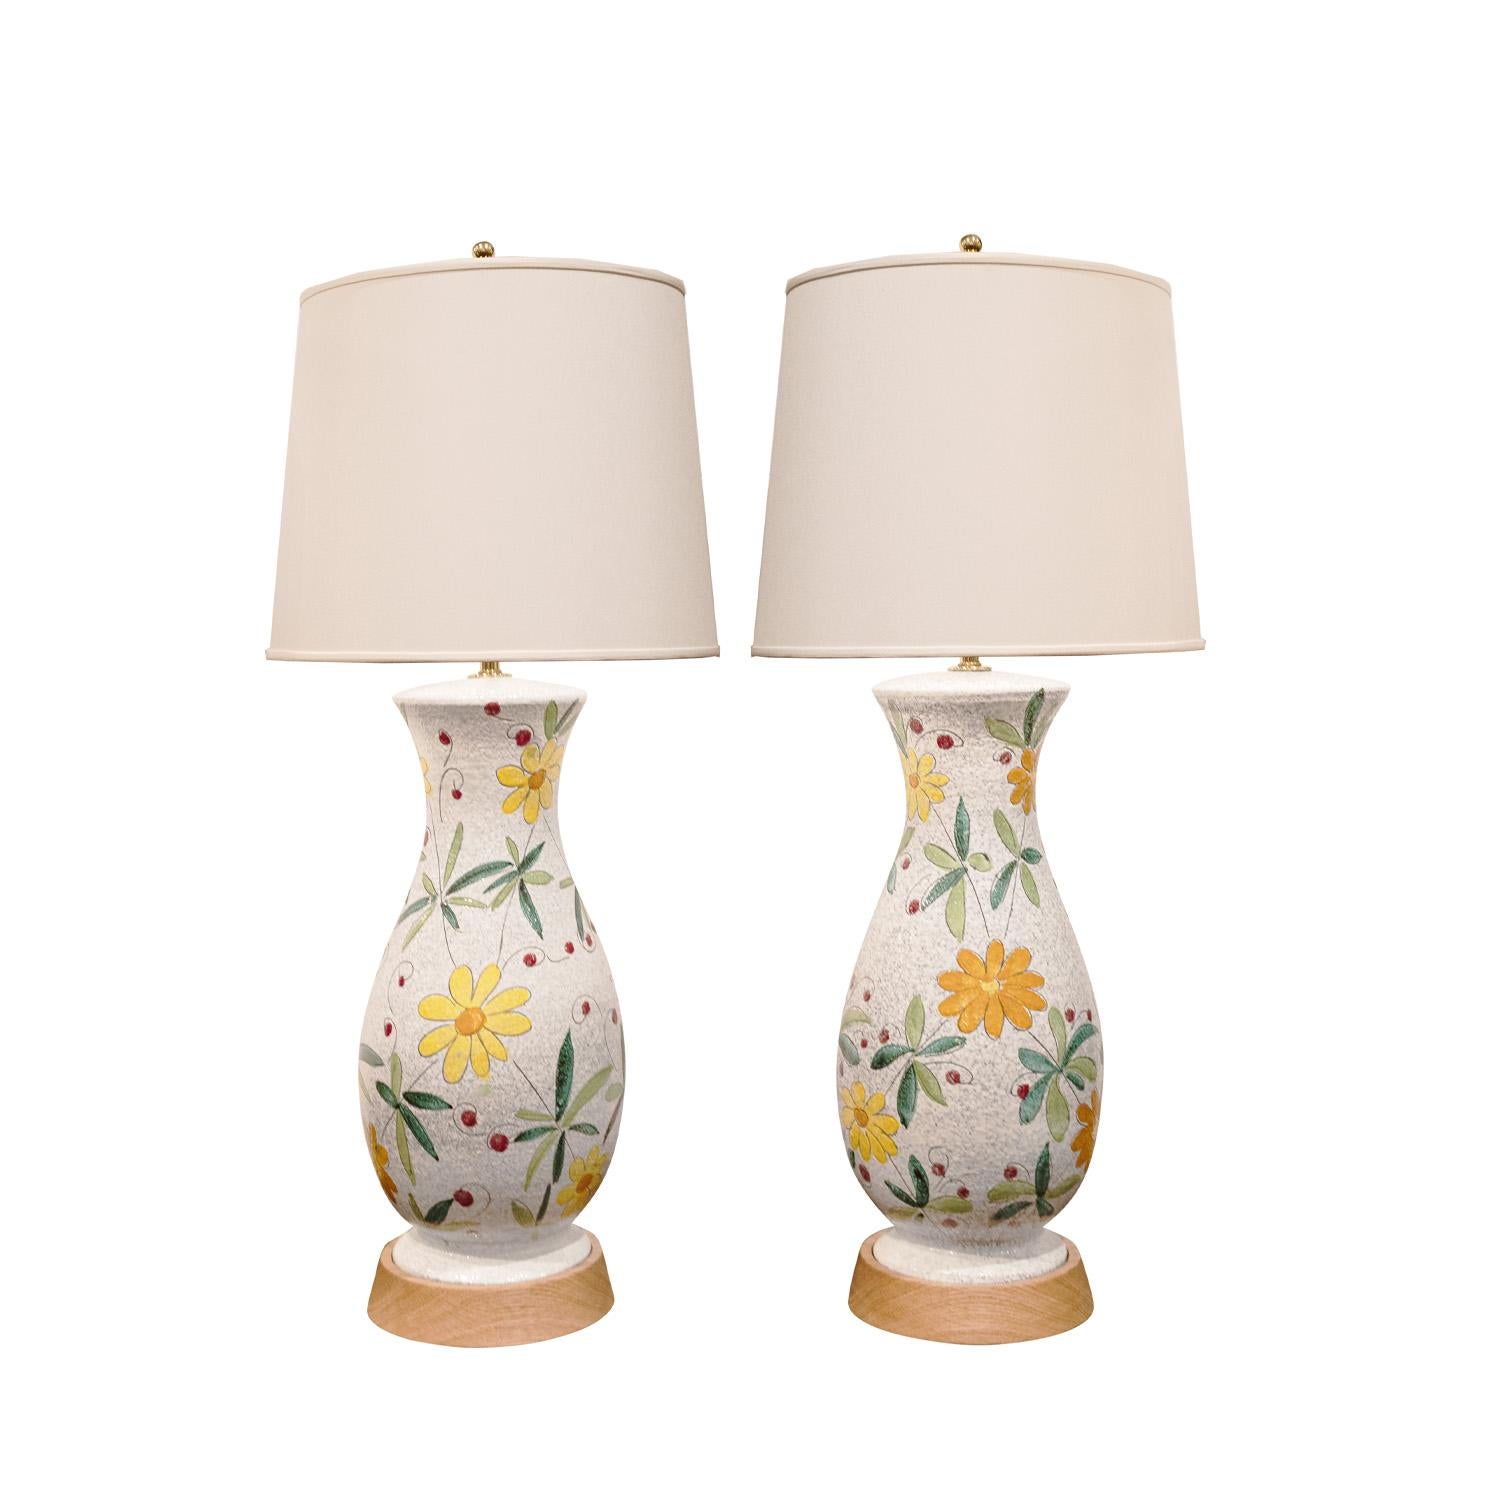 Paar handgefertigte Keramik-Tischlampen mit Blumenmotiv auf Holzsockel mit polierten Messingbeschlägen von Bitossi, Italien 1950er Jahre. Diese sind wunderschön gemacht mit wunderbarer Farbgebung und Ausführung.

Durchmesser: 8 Zoll
Höhe: 32 Zoll